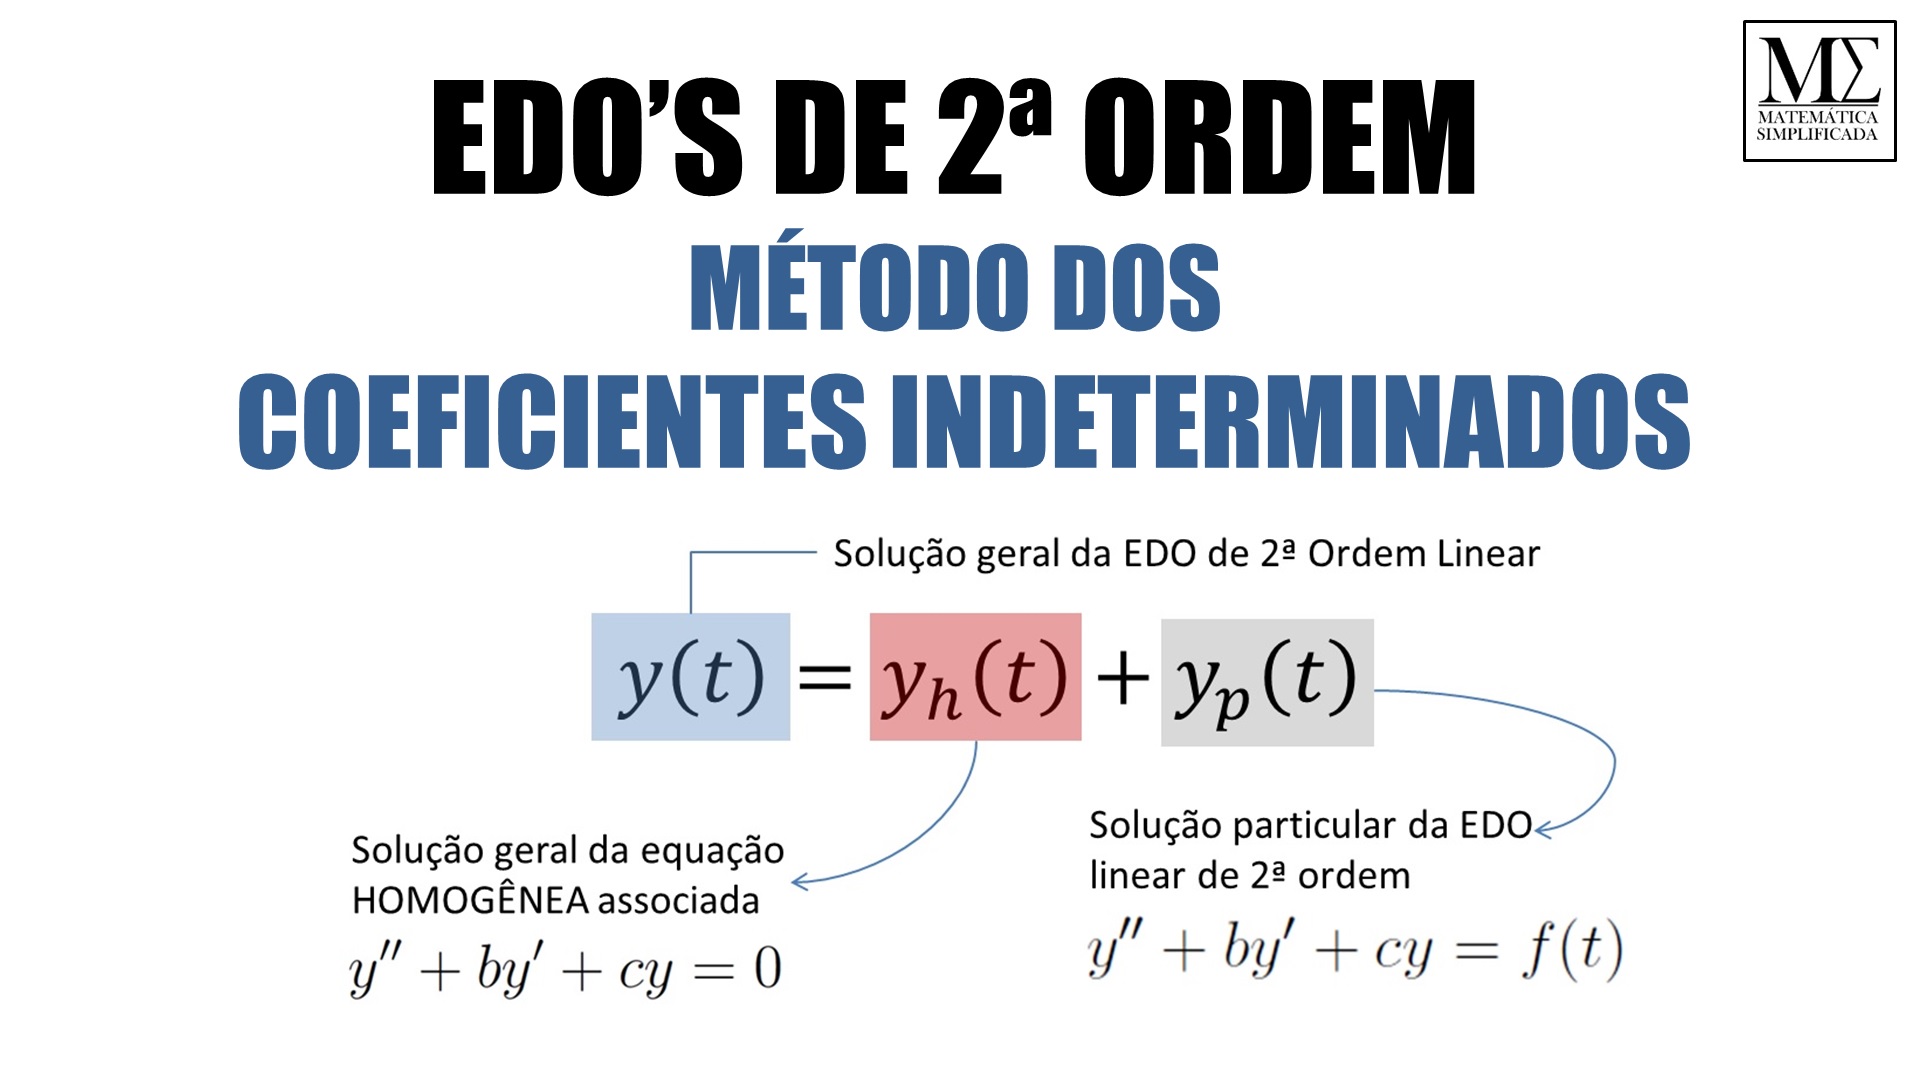 Método Dos Coeficientes Indeterminados Edos De 2ª Ordem